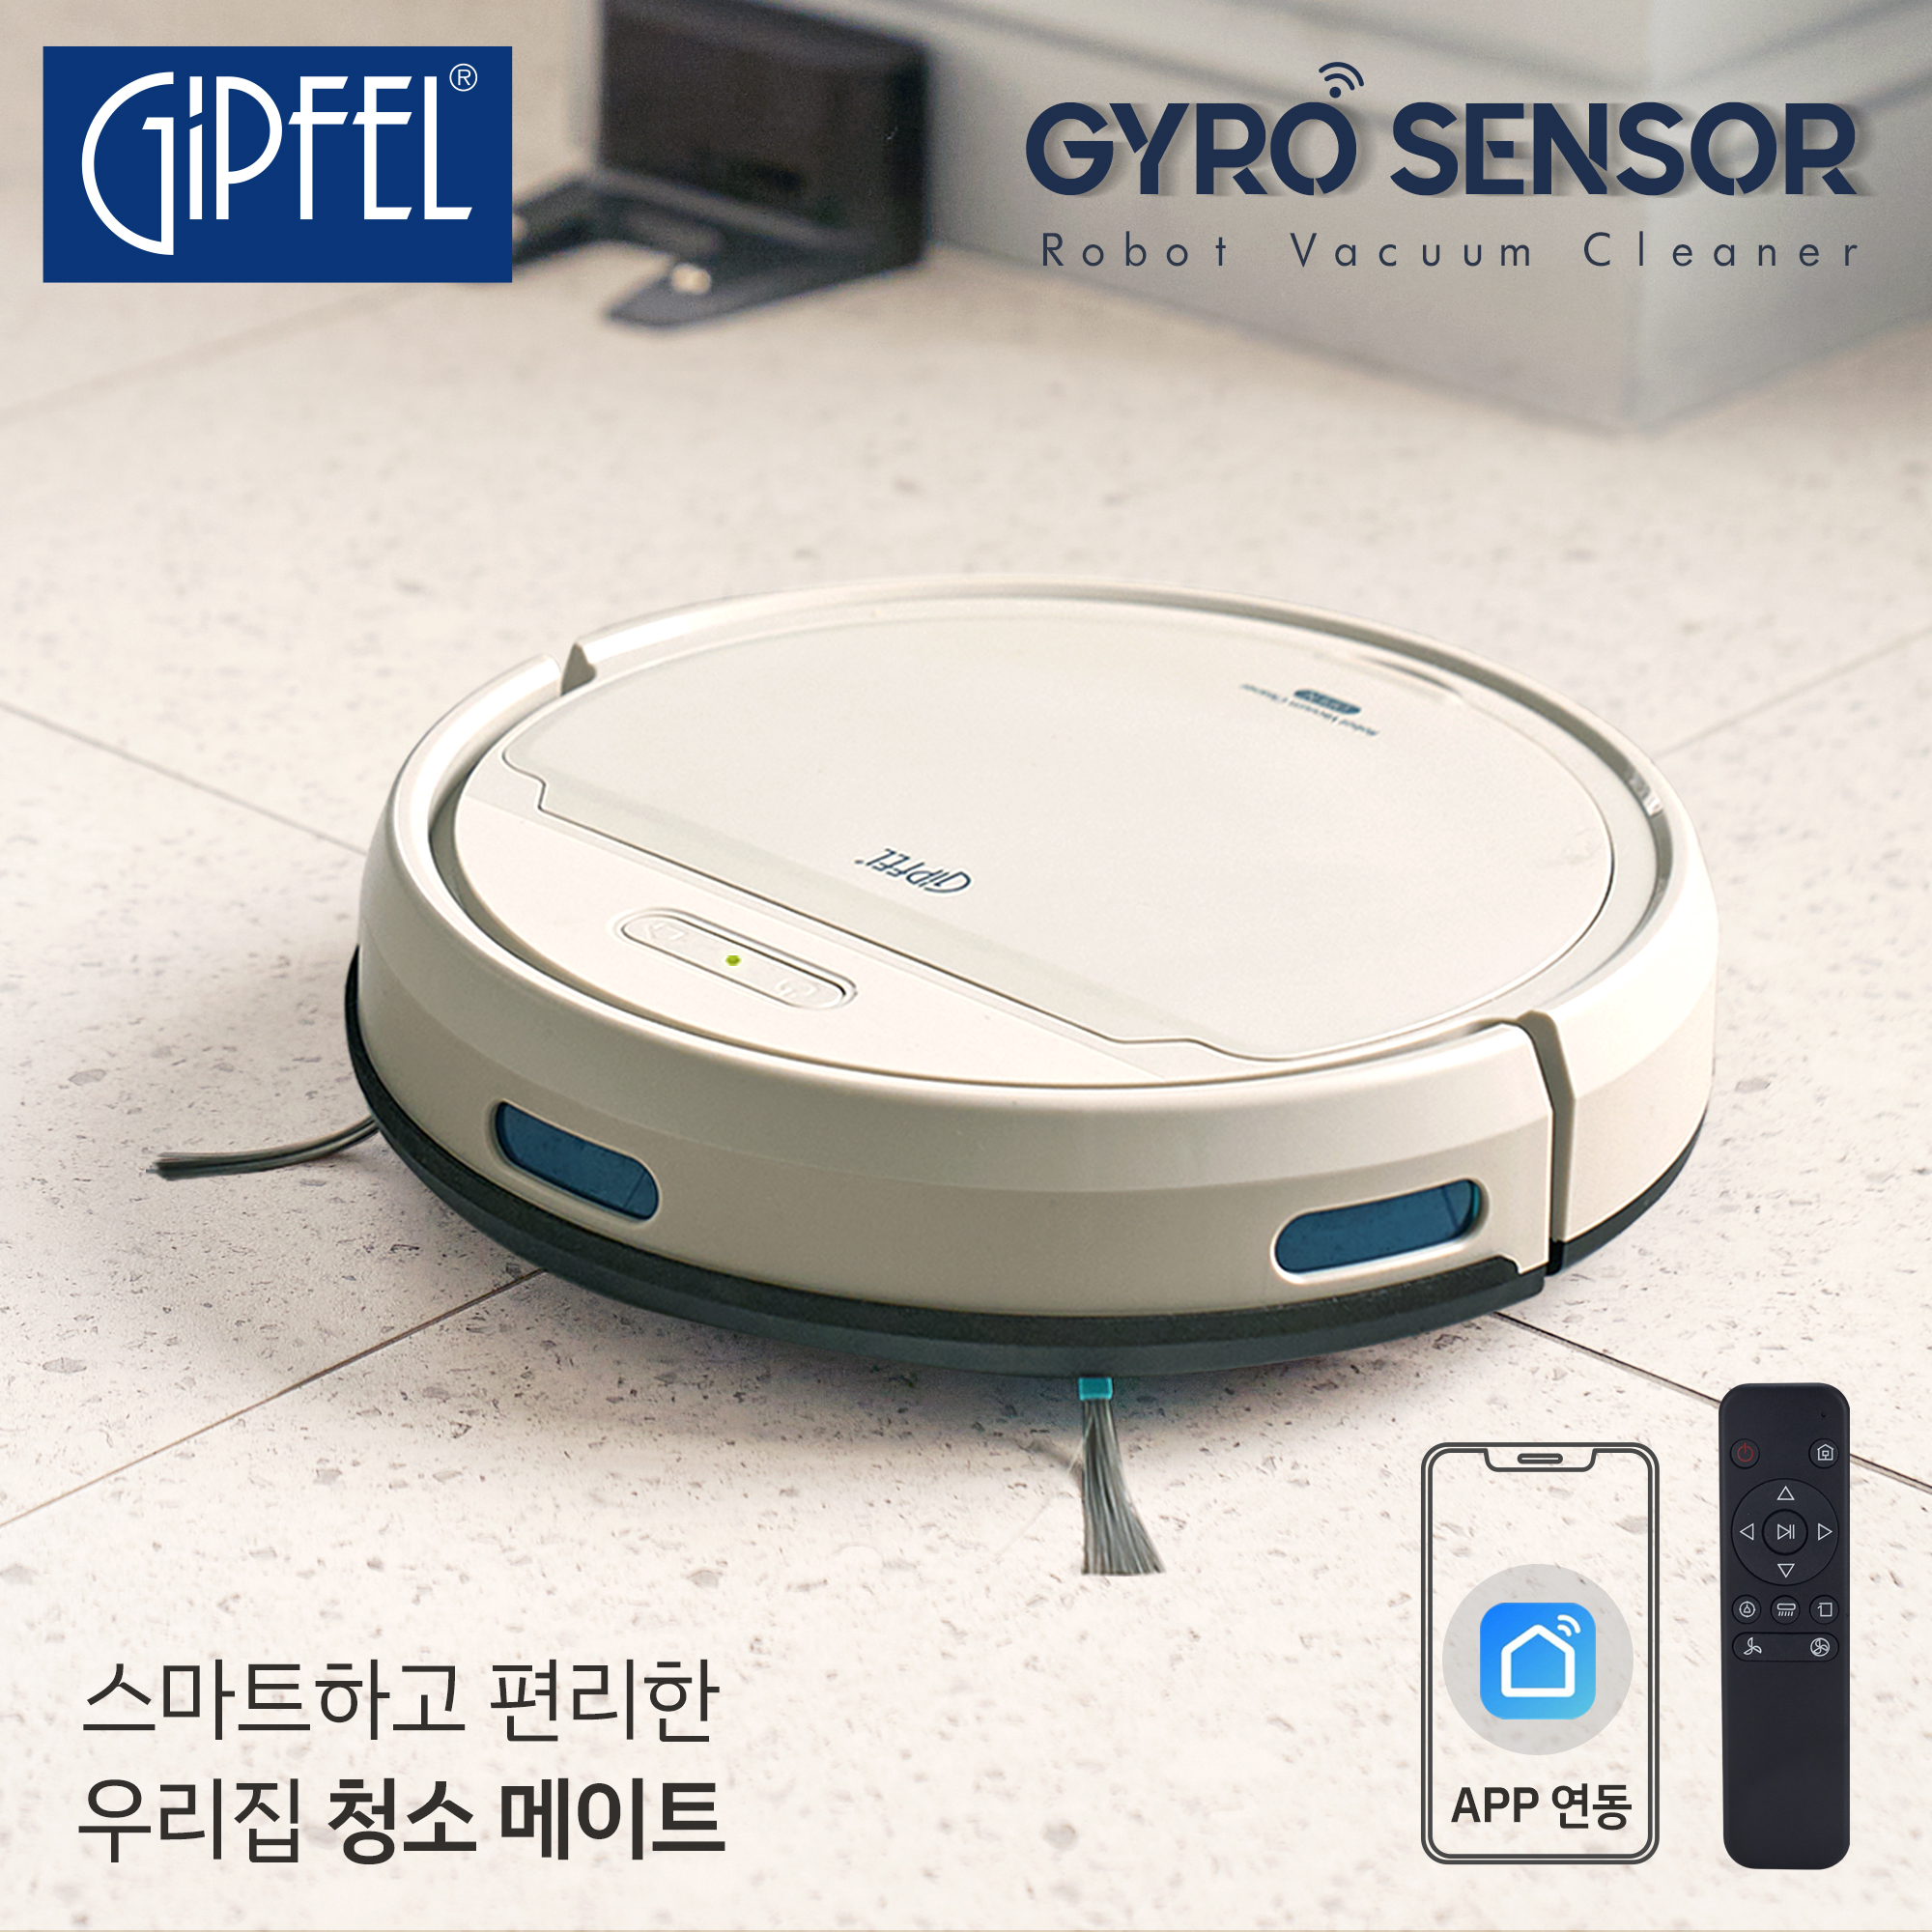 [기펠] 자이로센서 로봇청소기 GFR-1121G 이미지